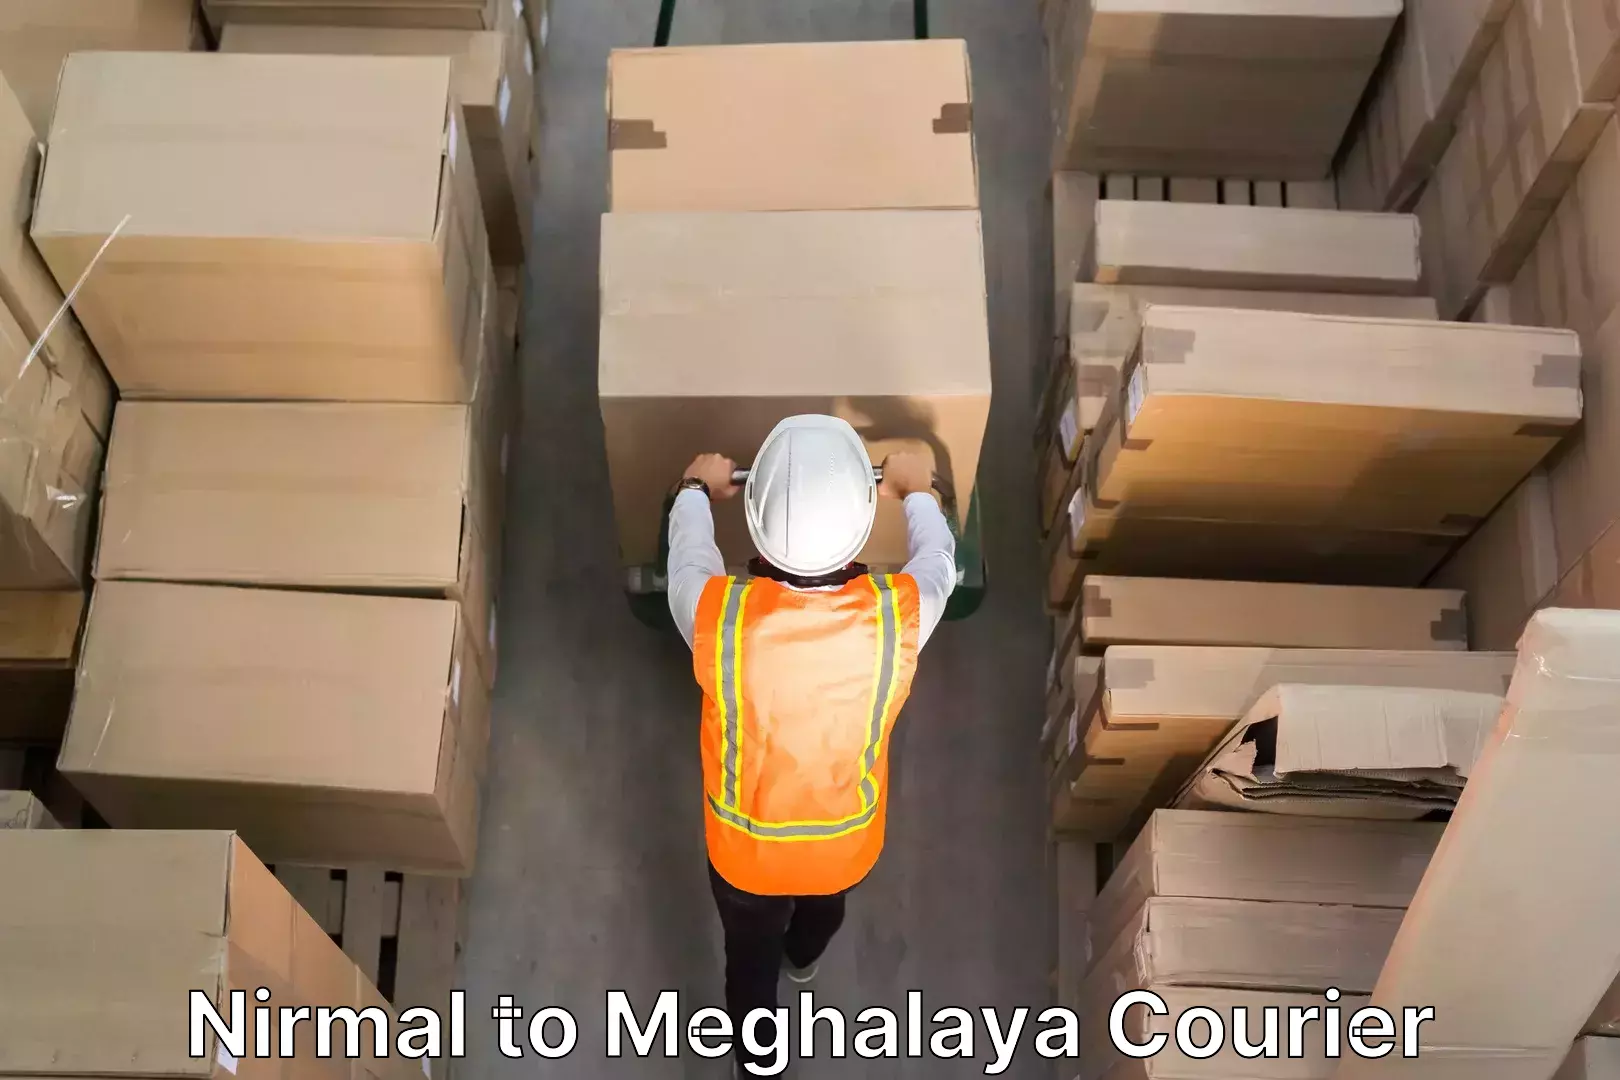 Furniture moving experts Nirmal to Meghalaya